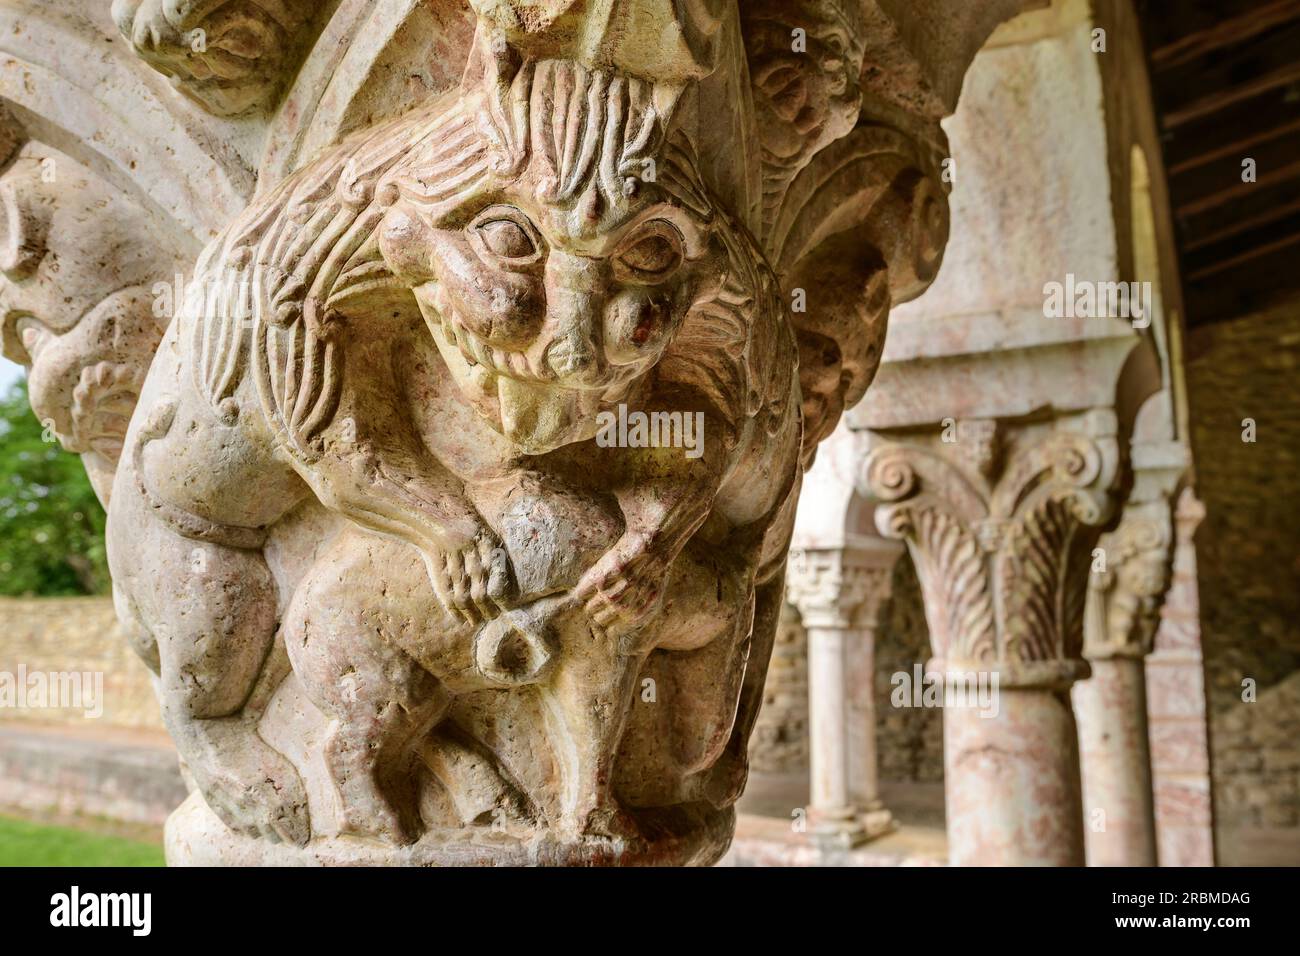 Capitale dans le cloître roman du Monastère de Saint Michel de Cuxa, Abbaye Saint Michel de Cuxa, Prades, Pyrénées, France Banque D'Images